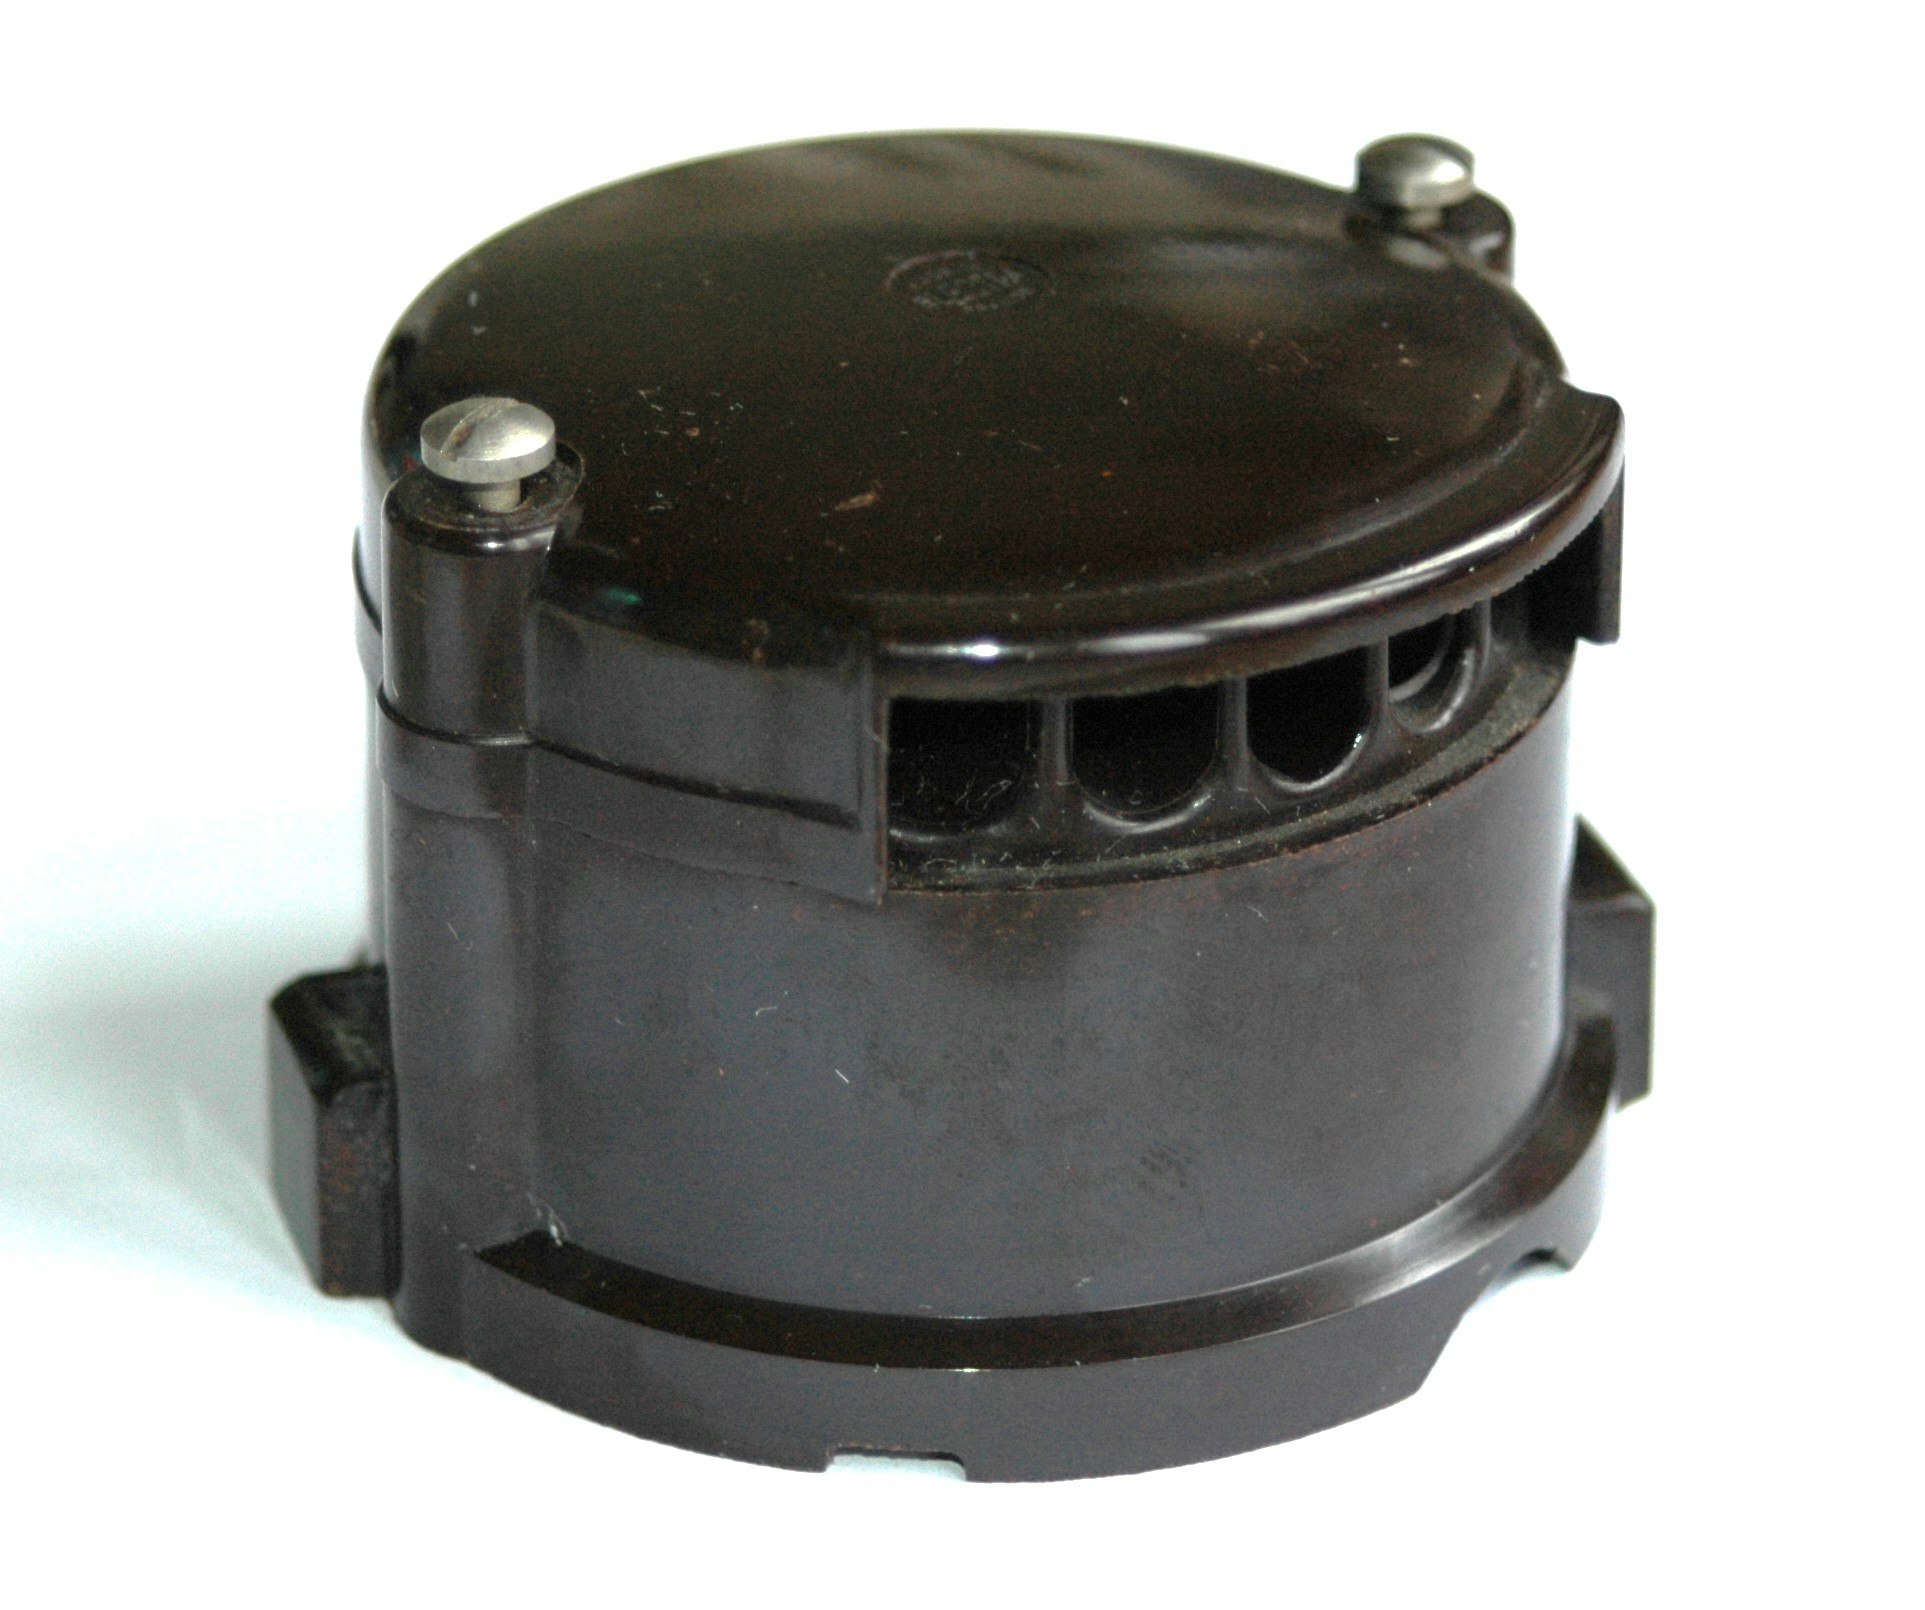 Fördelarlock BO-8010 Bosch 1946-53 Typ I, II  (Electra)